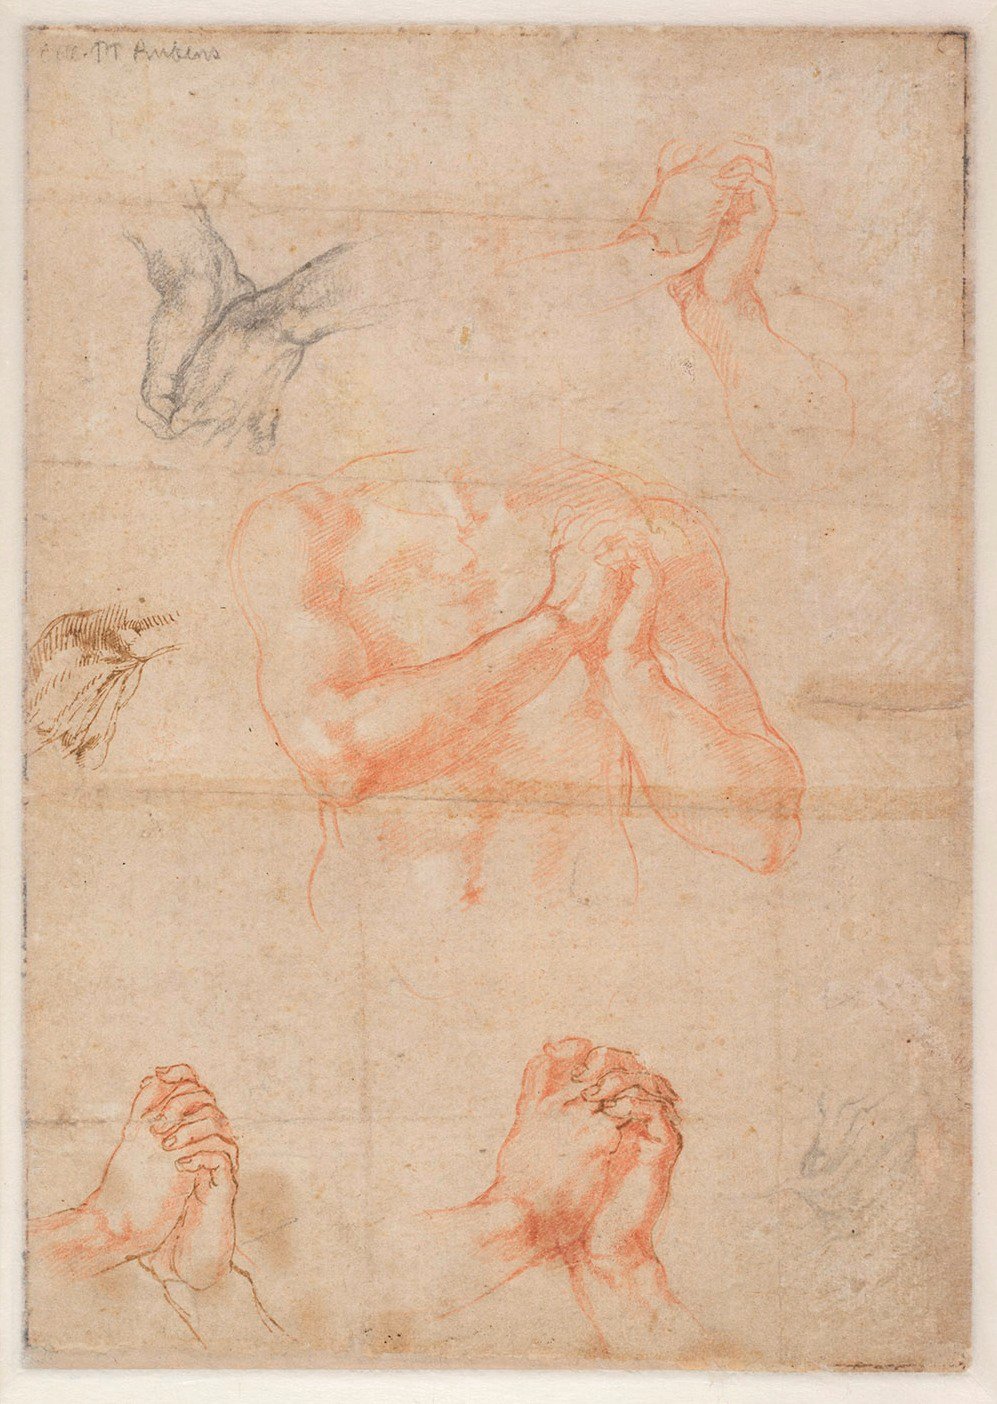 Michelangelo Buonarroti, Studio di mani (verso), circa 1510-11, 27,2 x 19,2 cm. Albertina, Vienna. Courtesy National Gallery